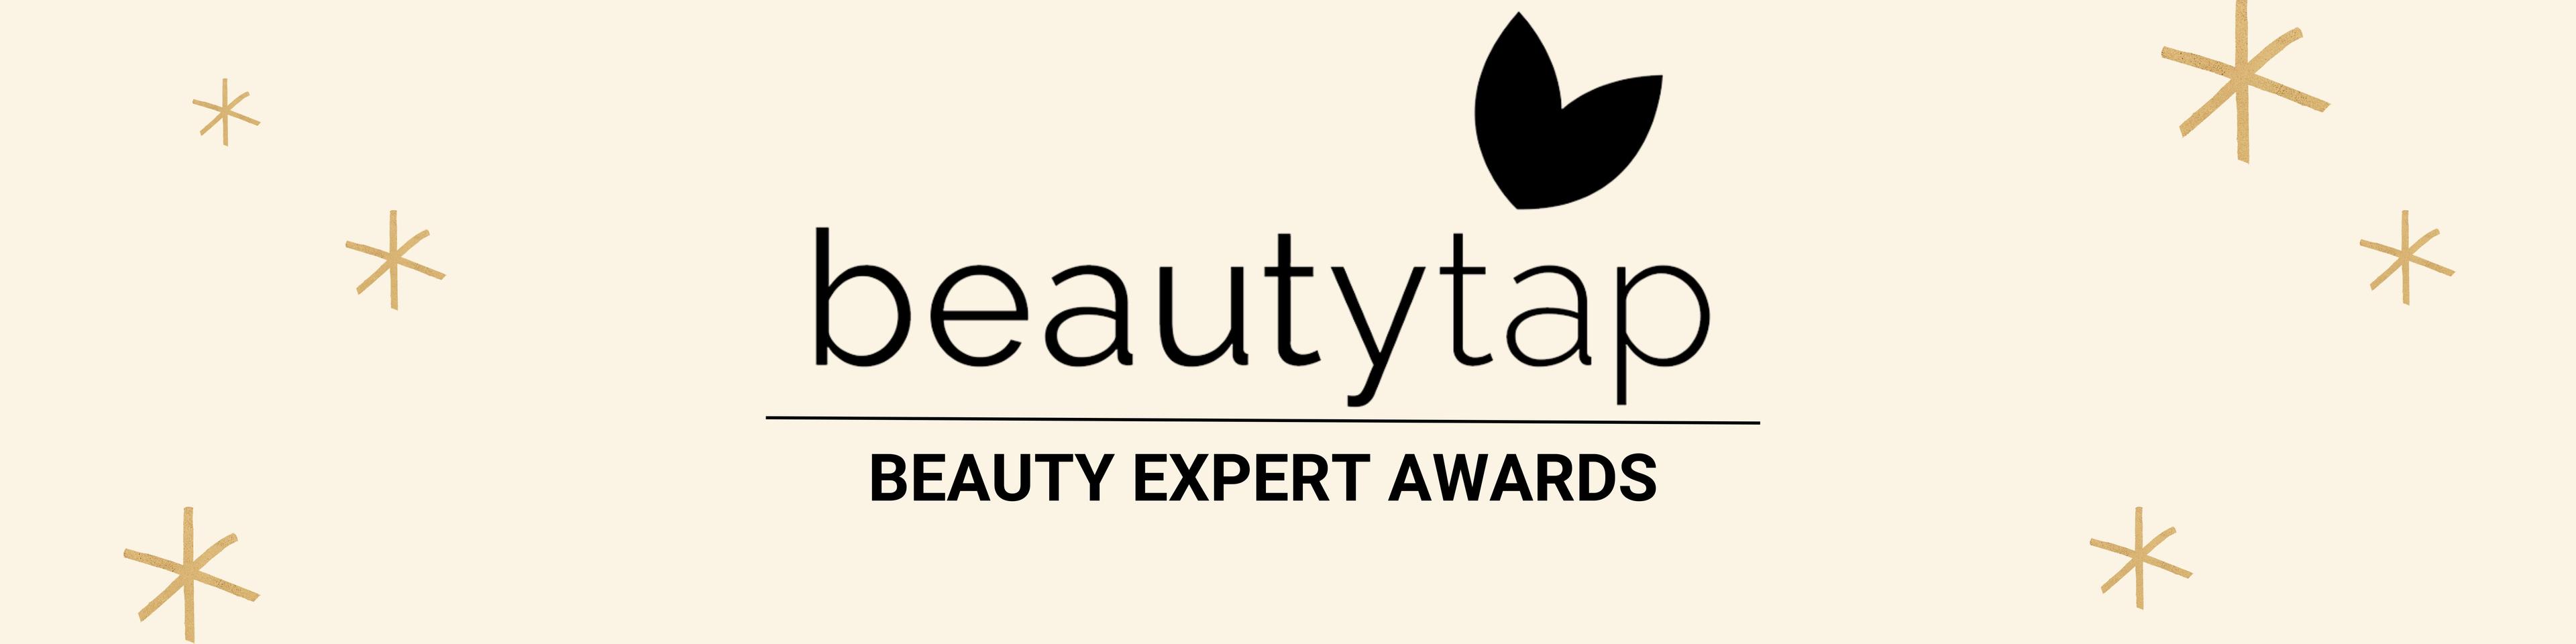 Beautytap’s Beauty Expert Awards